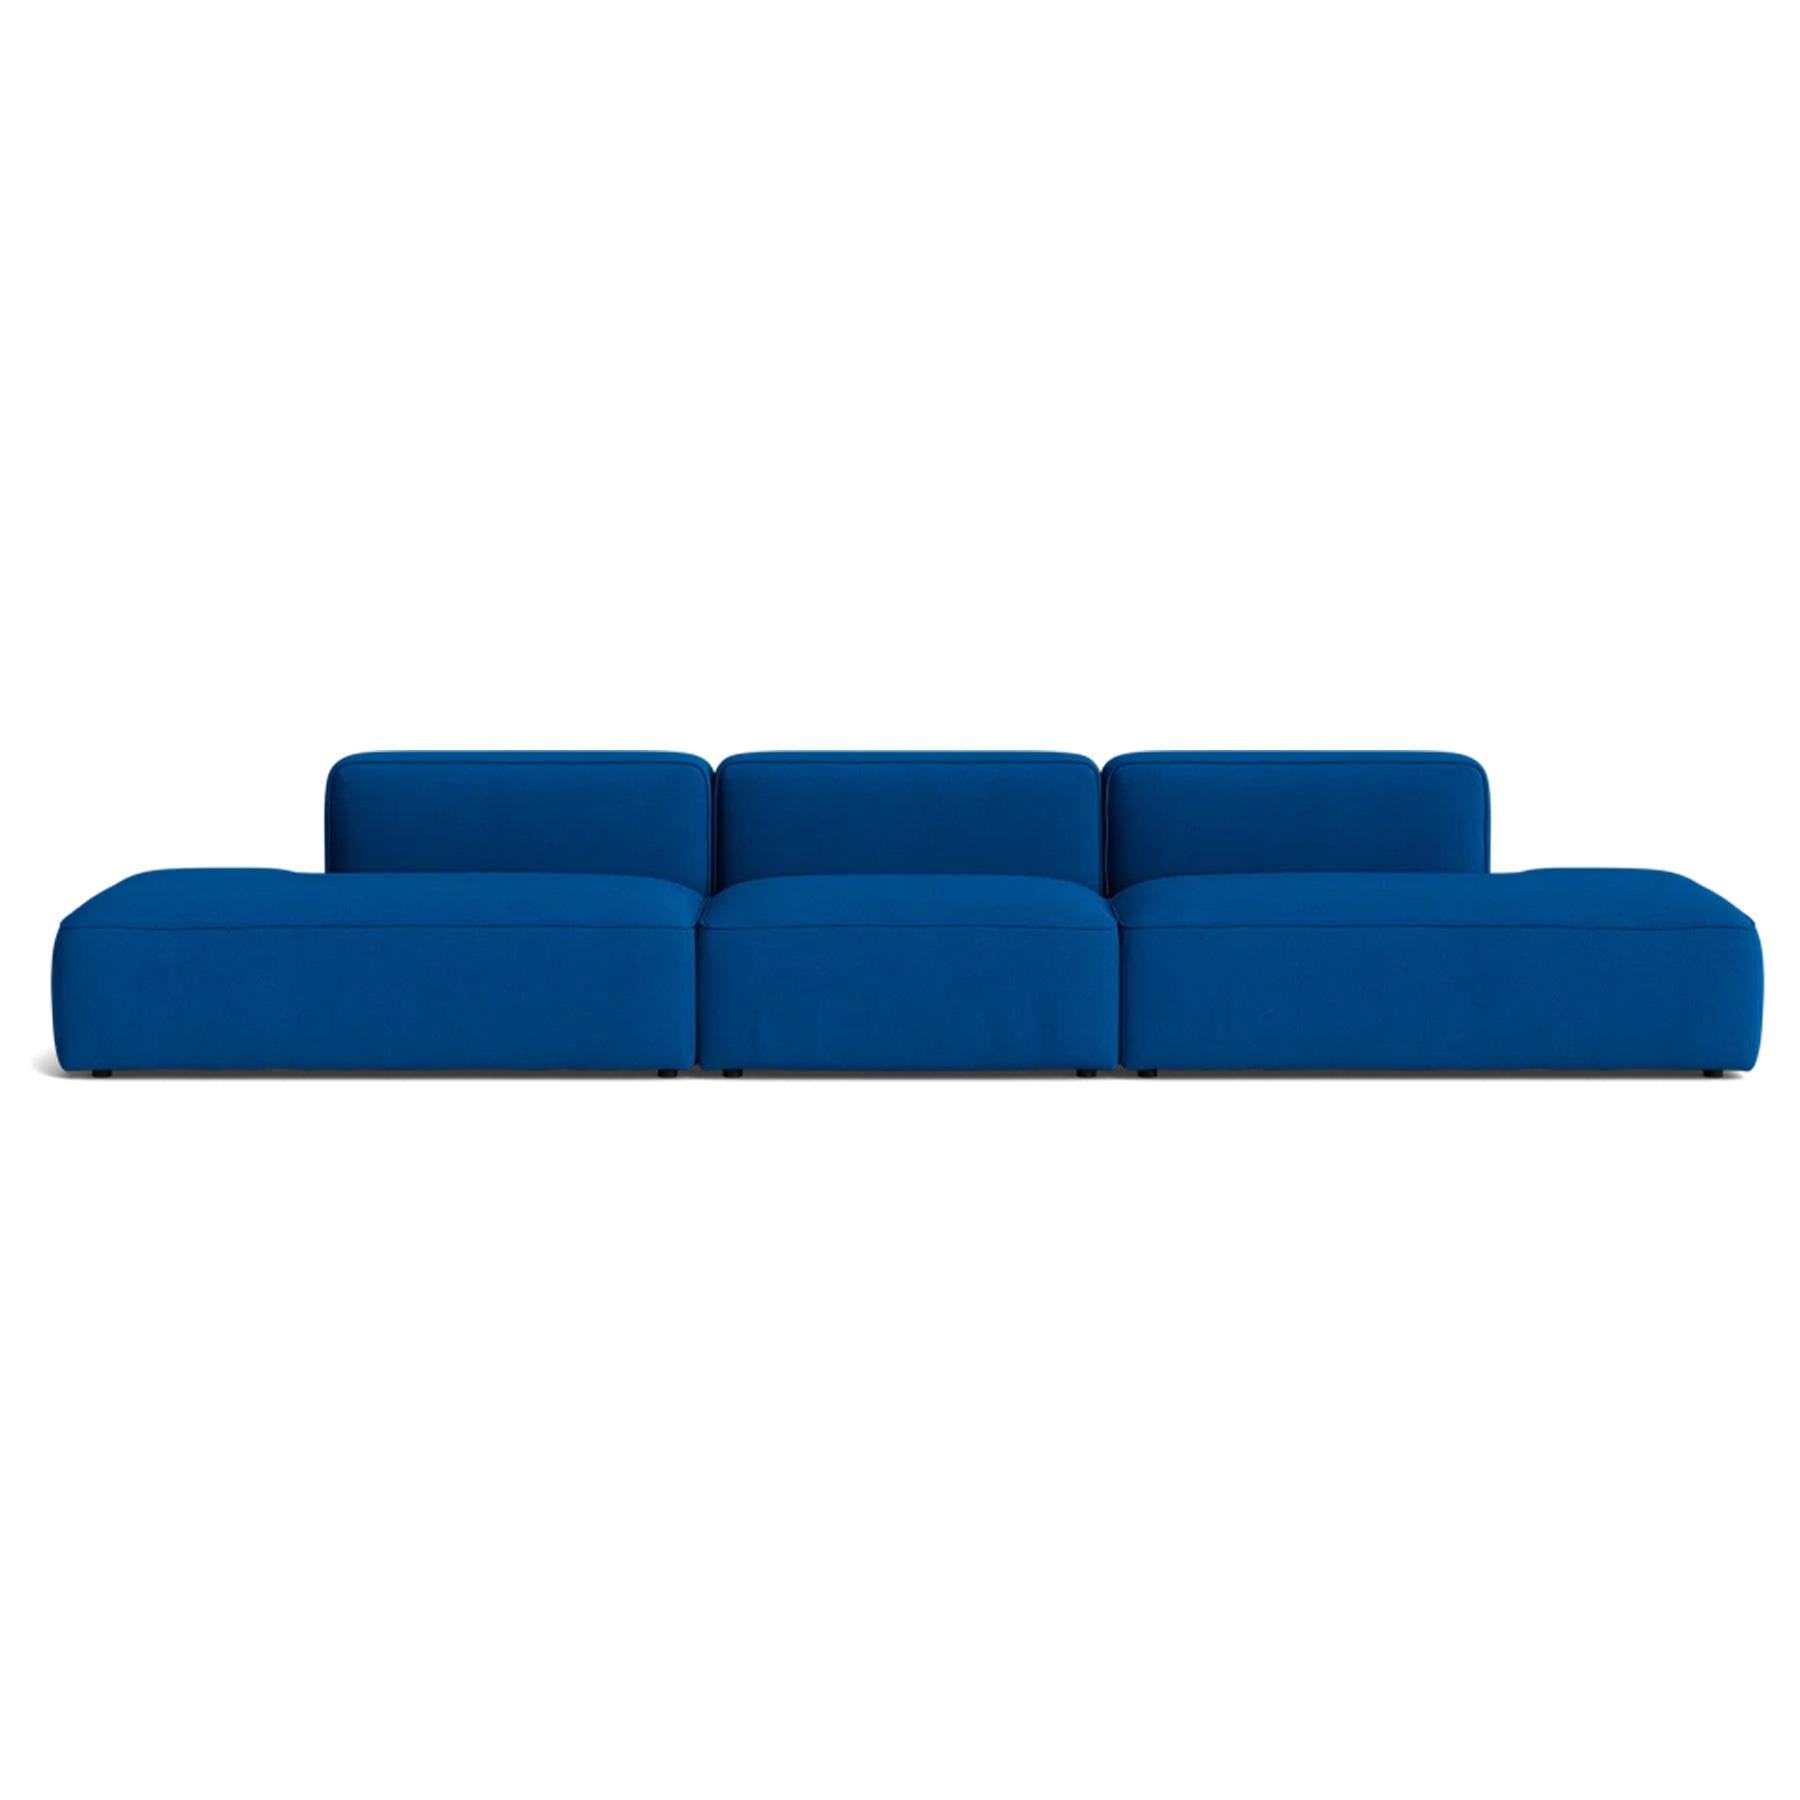 Make Nordic Basecamp Xl Midt Open Sofa Hallingdal 750 Blue Designer Furniture From Holloways Of Ludlow